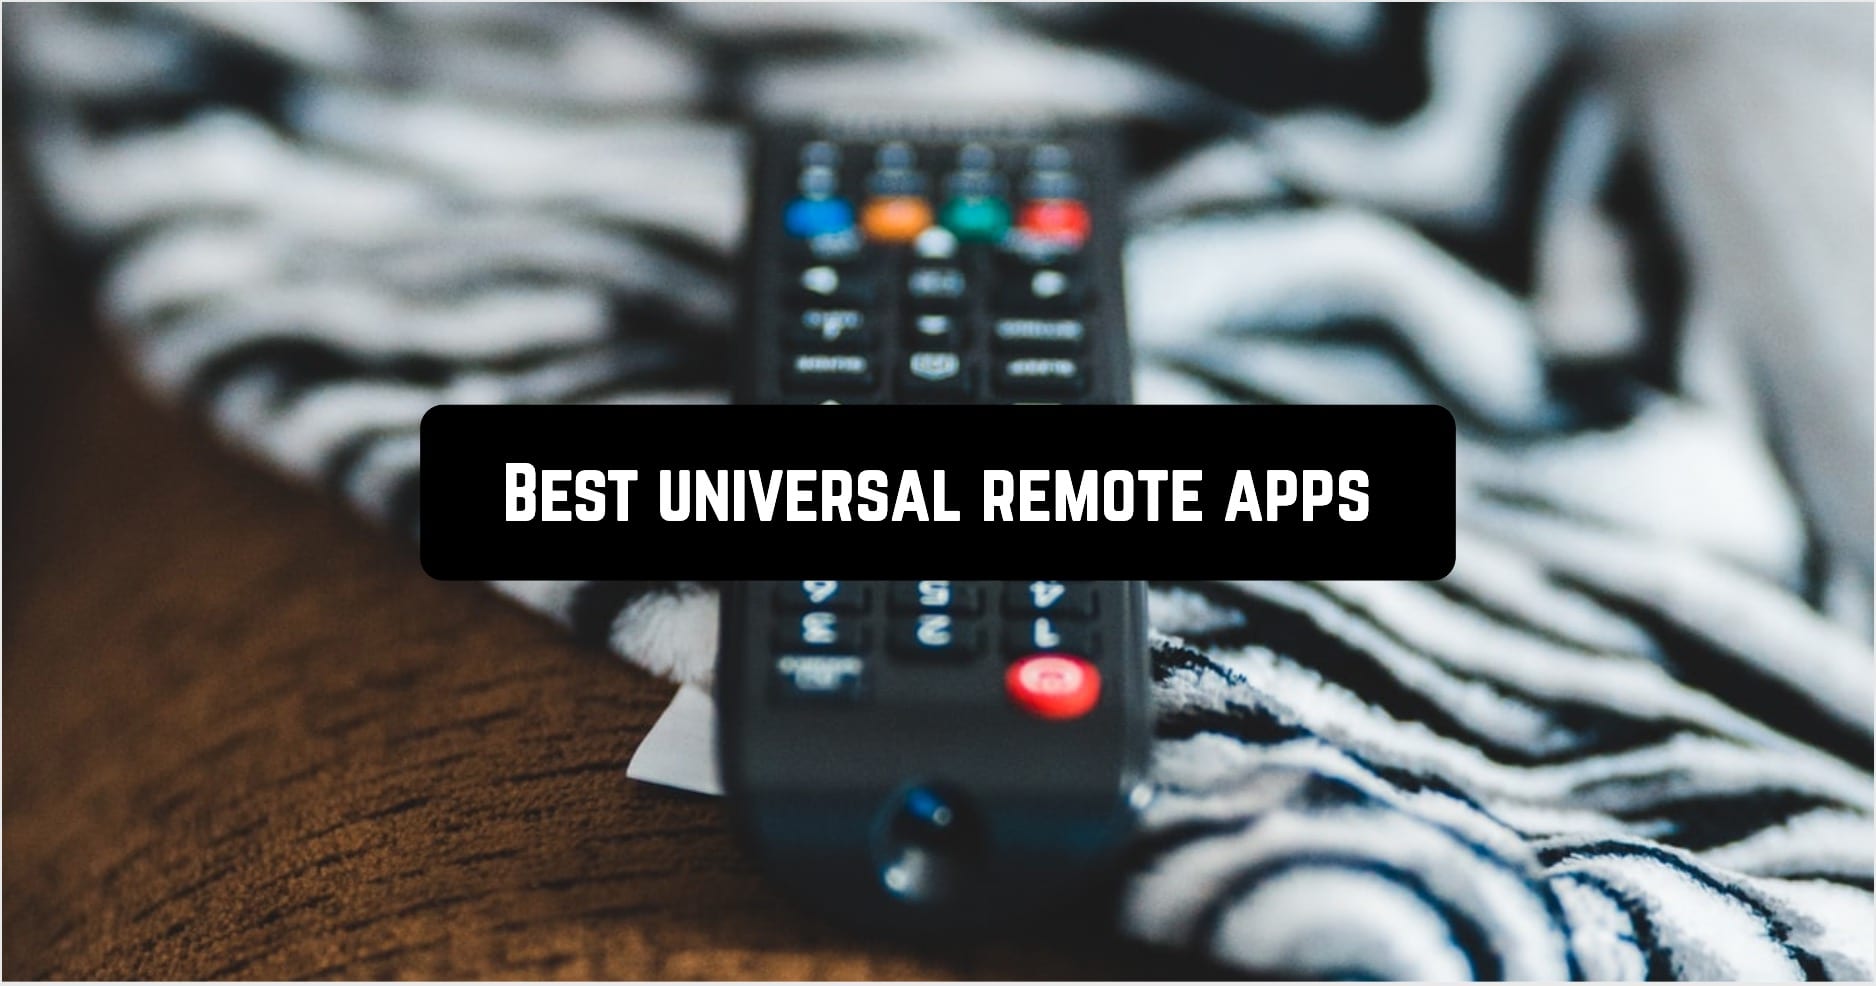 Best universal remote apps